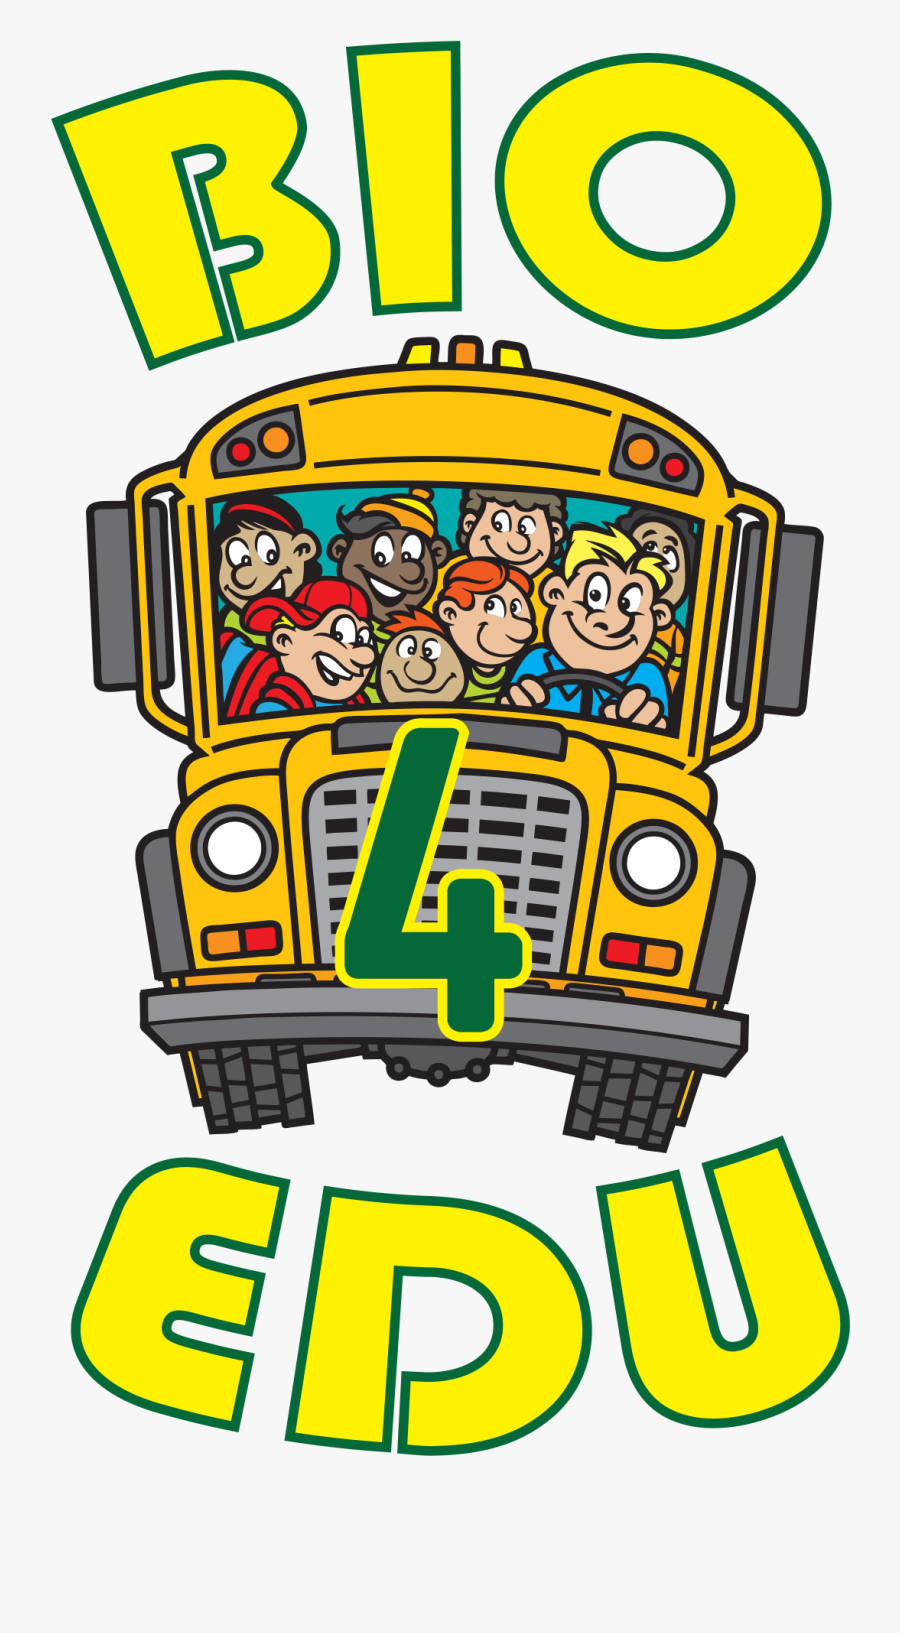 Bio4edu - School Bus, Transparent Clipart